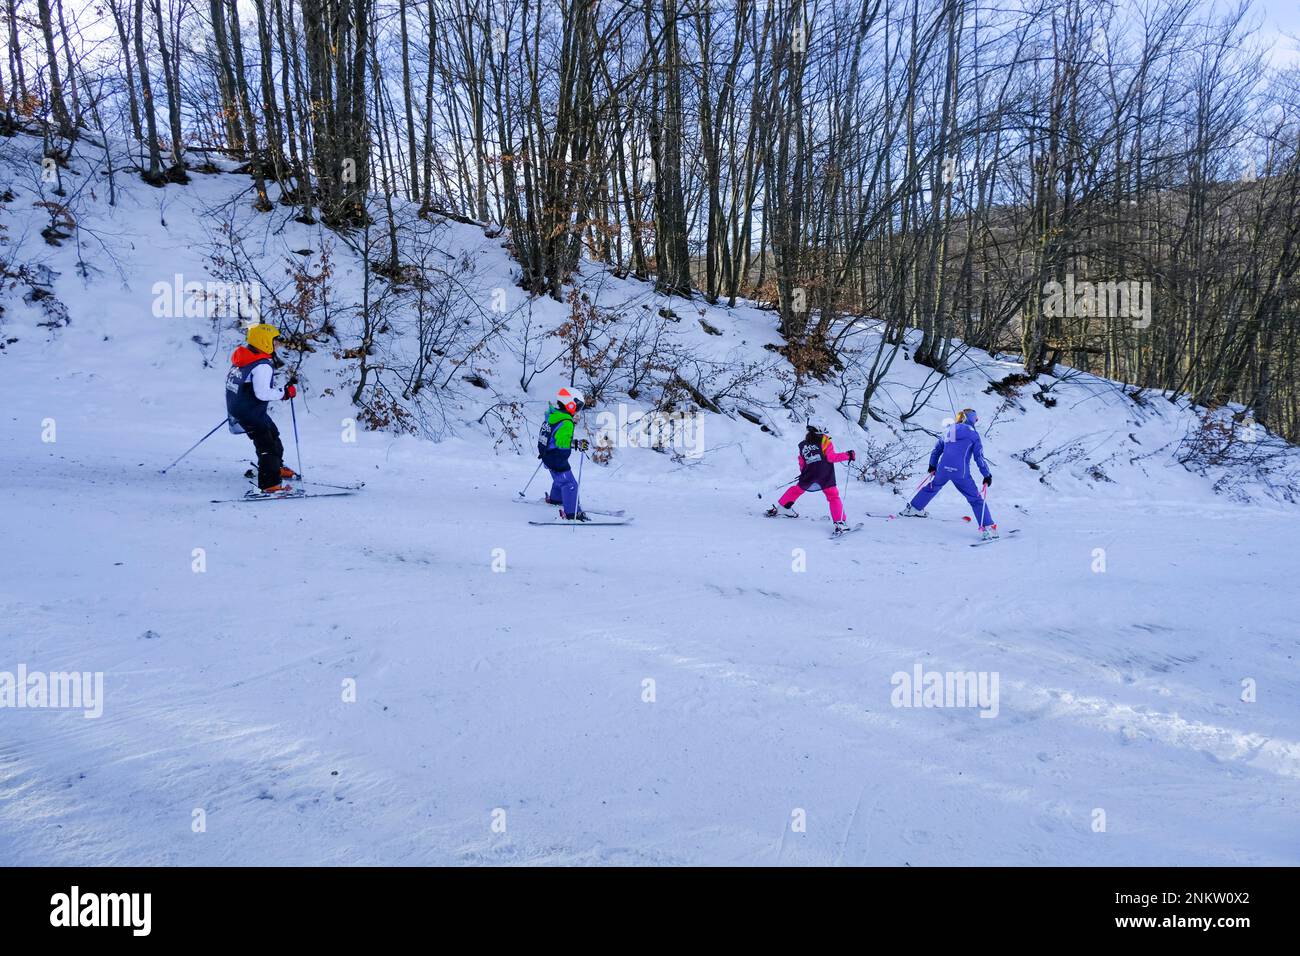 Kinder in bunten Skianzügen, die in den schneebedeckten Bergen über Bäume und Sonnenlicht Ski fahren. Stockfoto